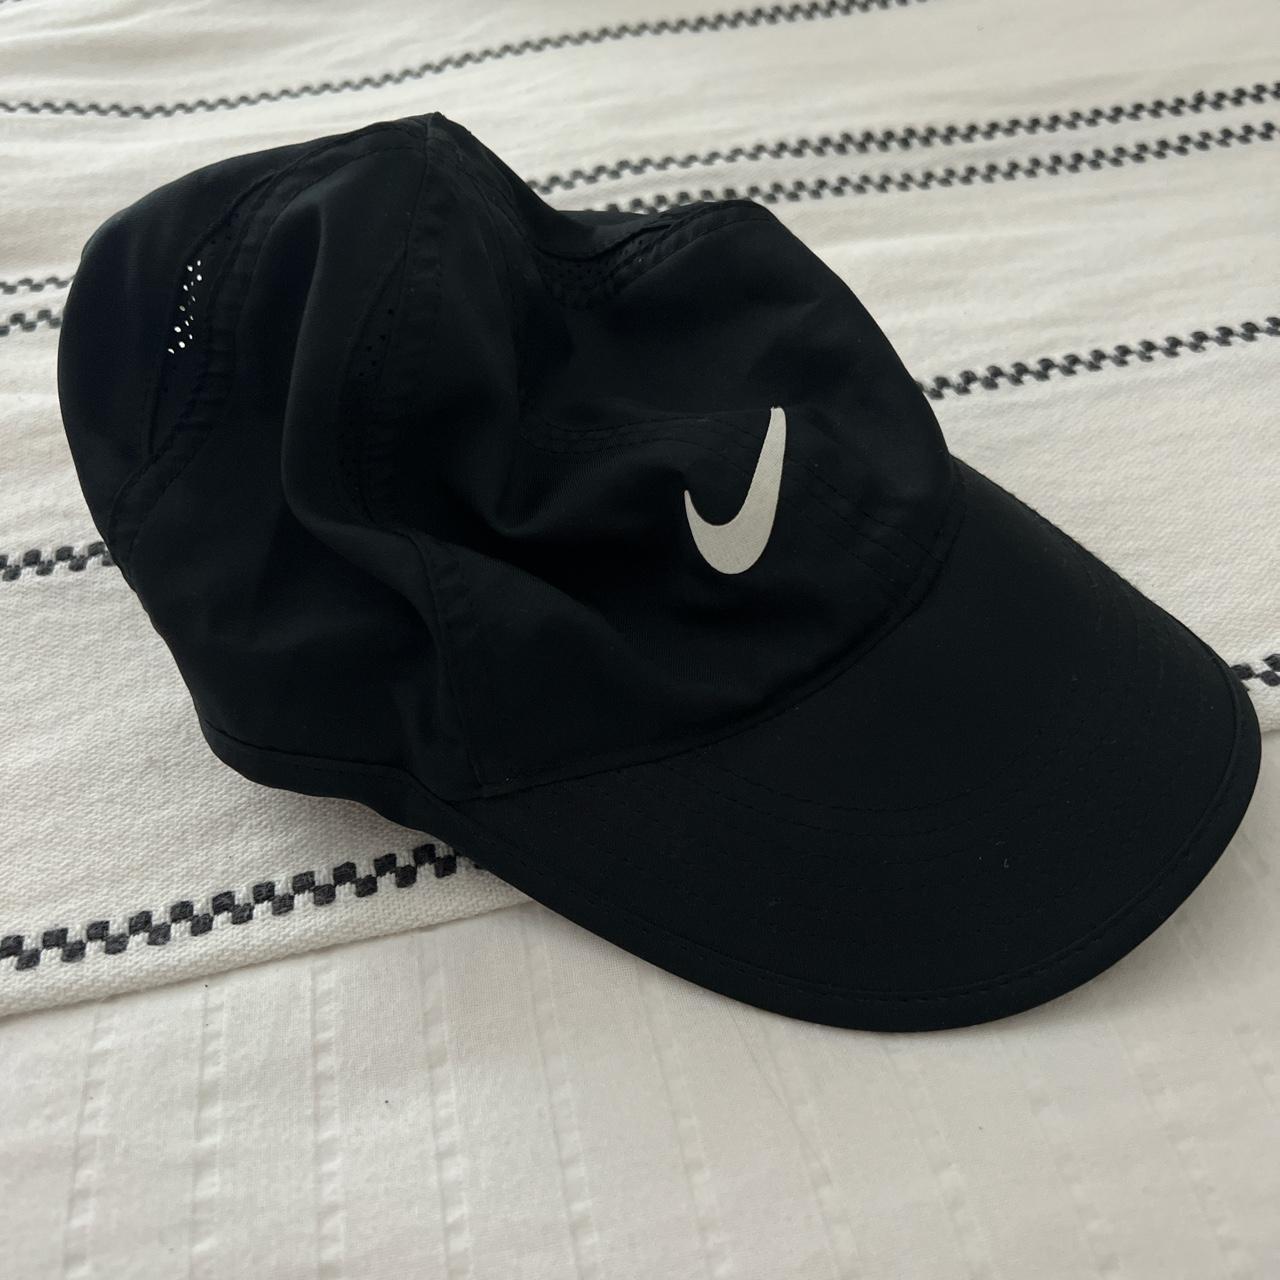 Never worn Nike Dri-fit hat! - Depop